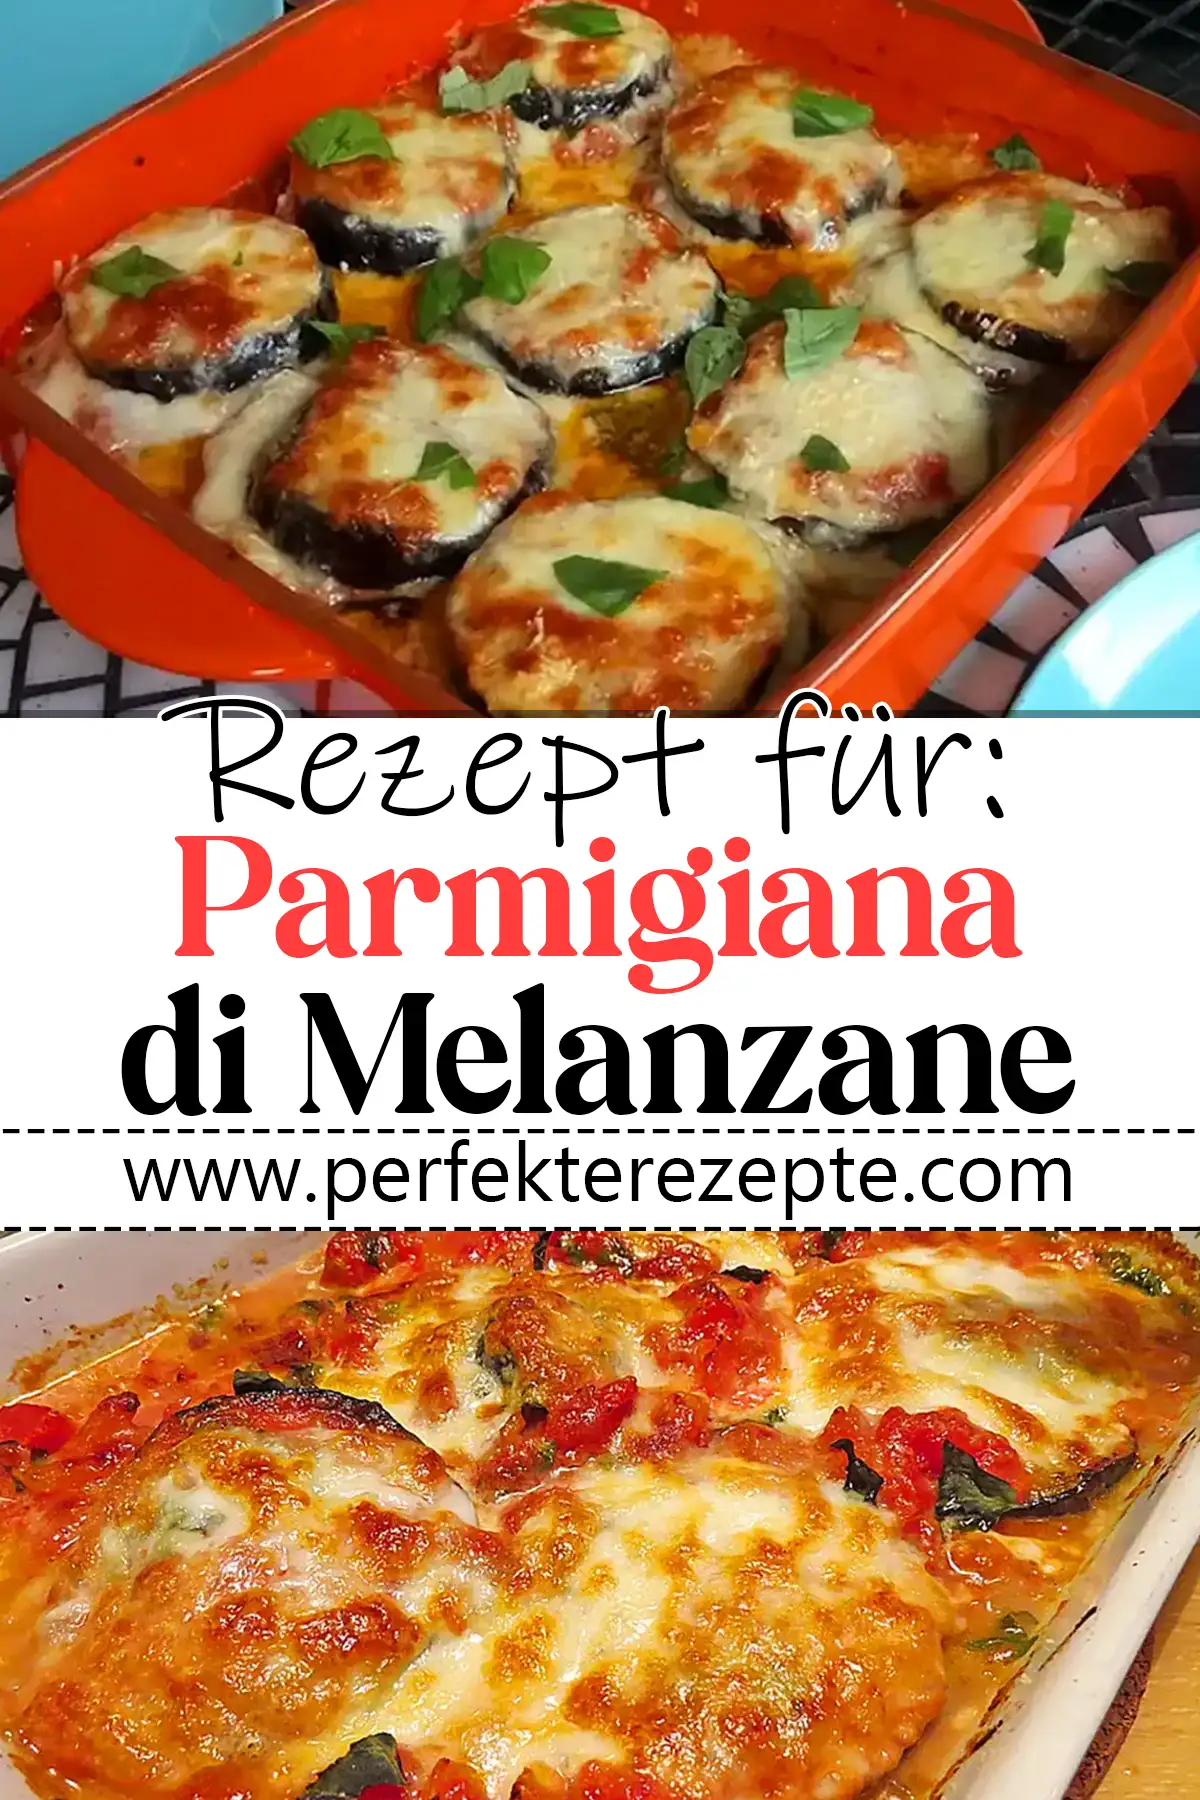 Parmigiana di Melanzane Rezept: Italienischer Auberginenauflauf